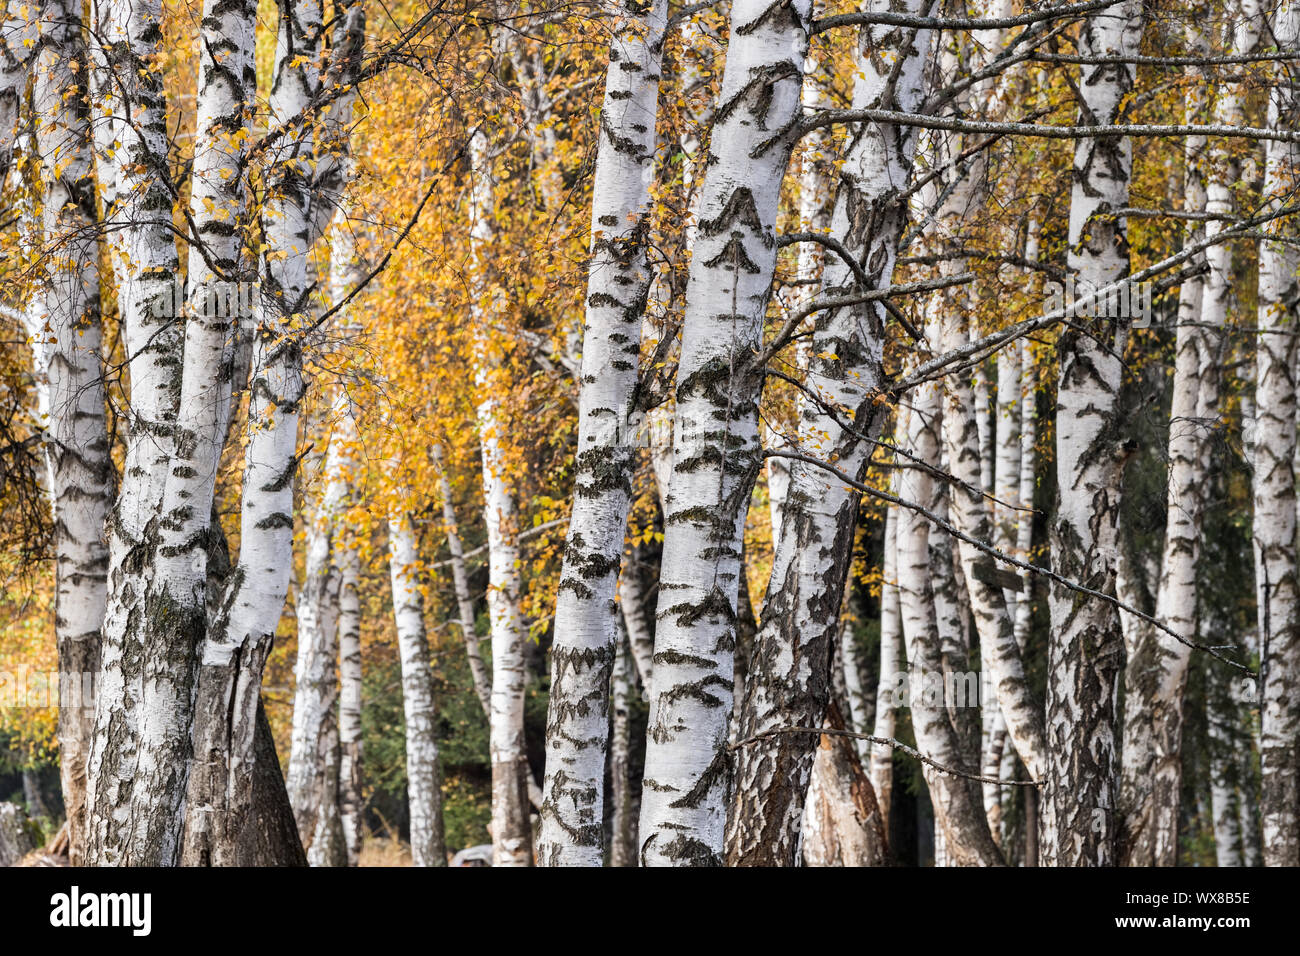 White boschi di betulle in autunno Foto Stock